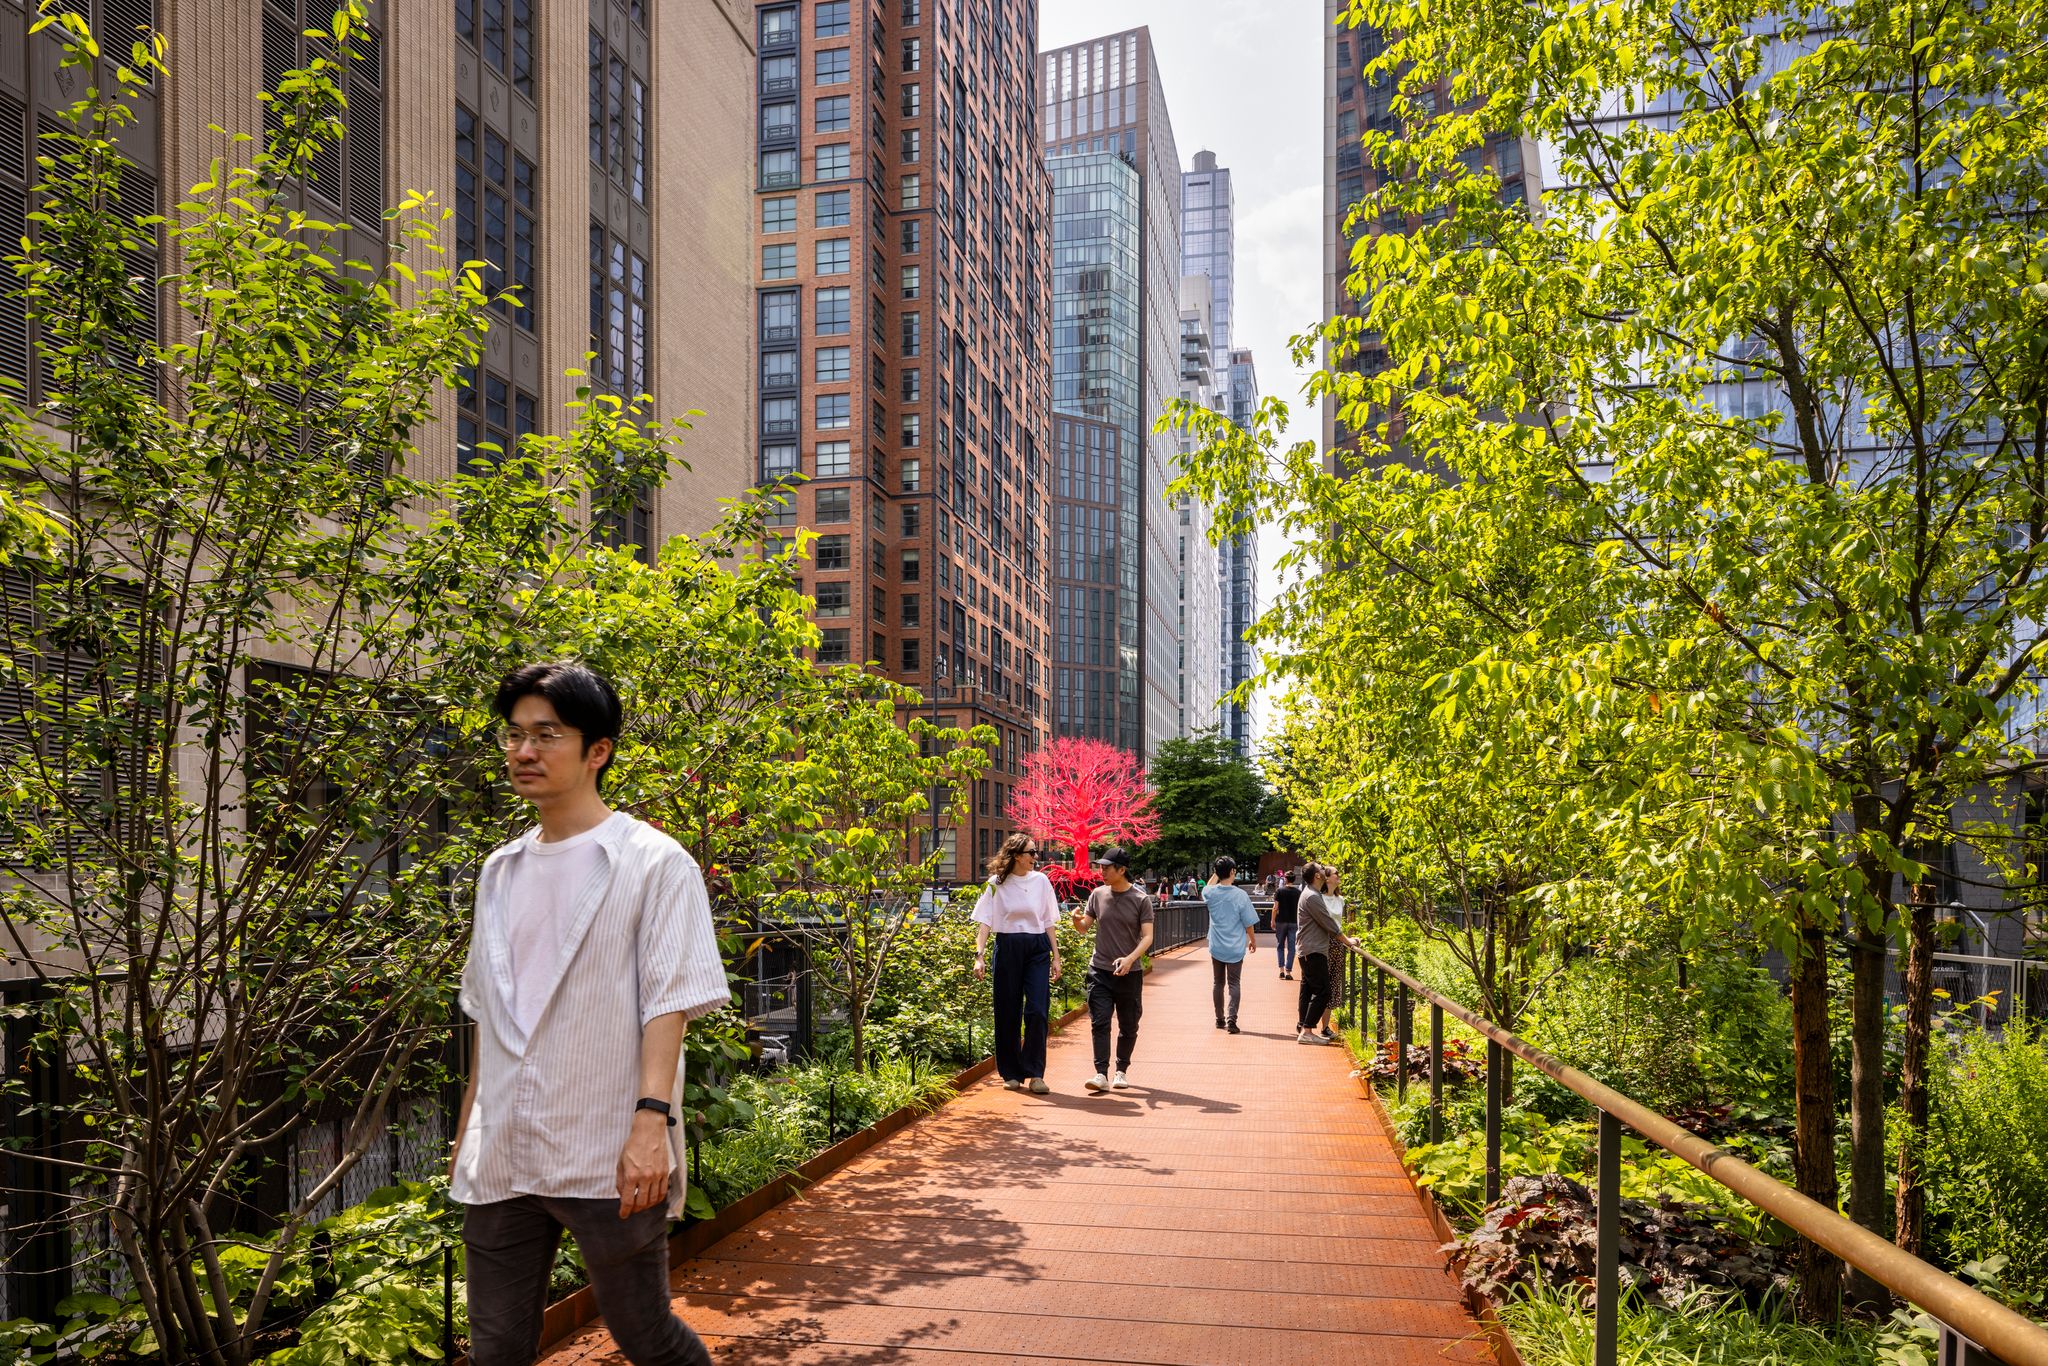 Hoch über den Straßen von New York City, umgeben von grün: Der Moynihan Connector ist sowohl optisch als auch funktional interessant. Foto: Andrew Frasz, courtesy of the High Line